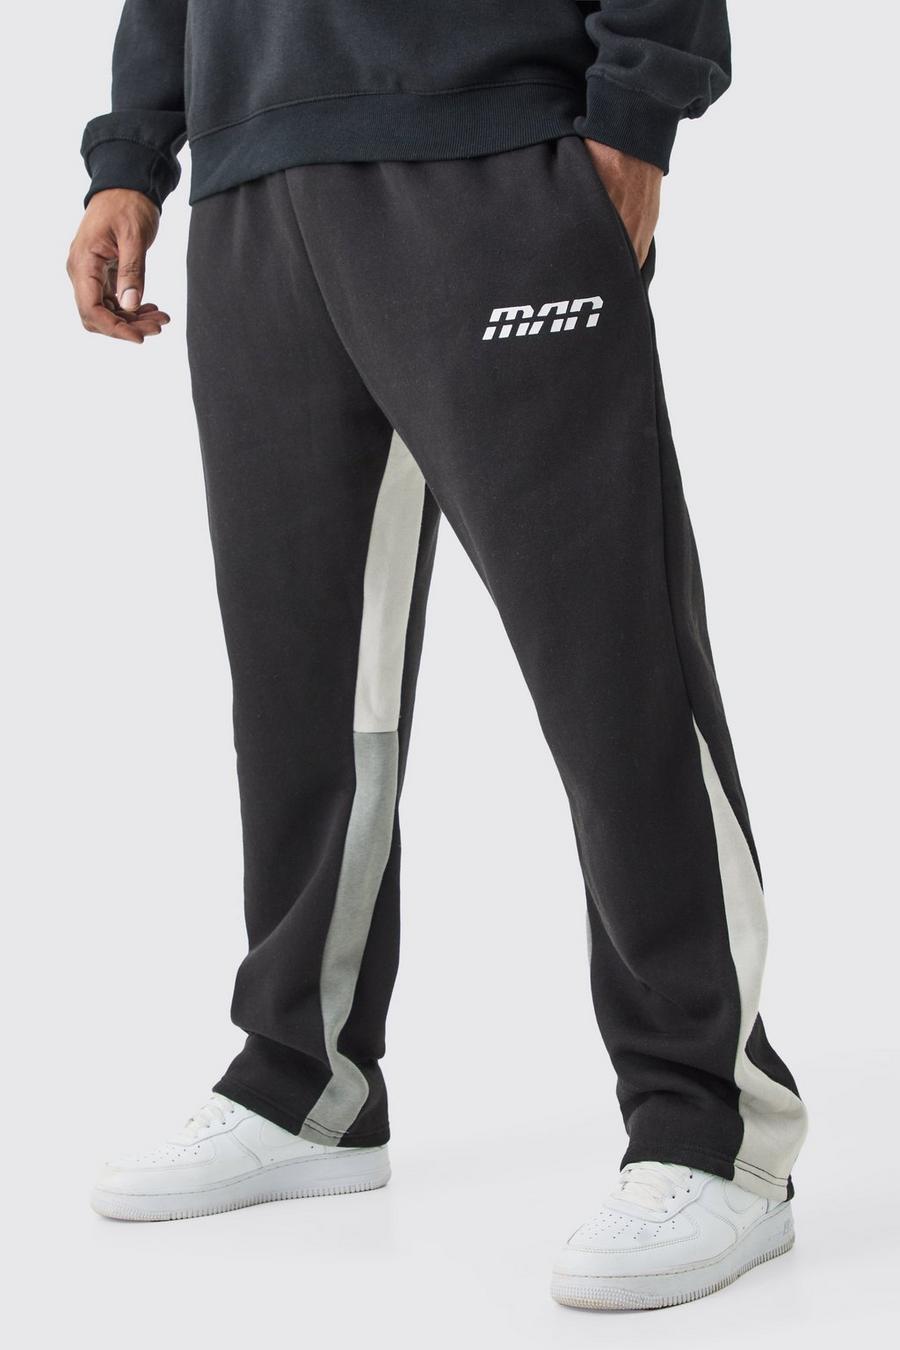 Pantalón deportivo Plus ajustado con colores en bloque y refuerzos, Black